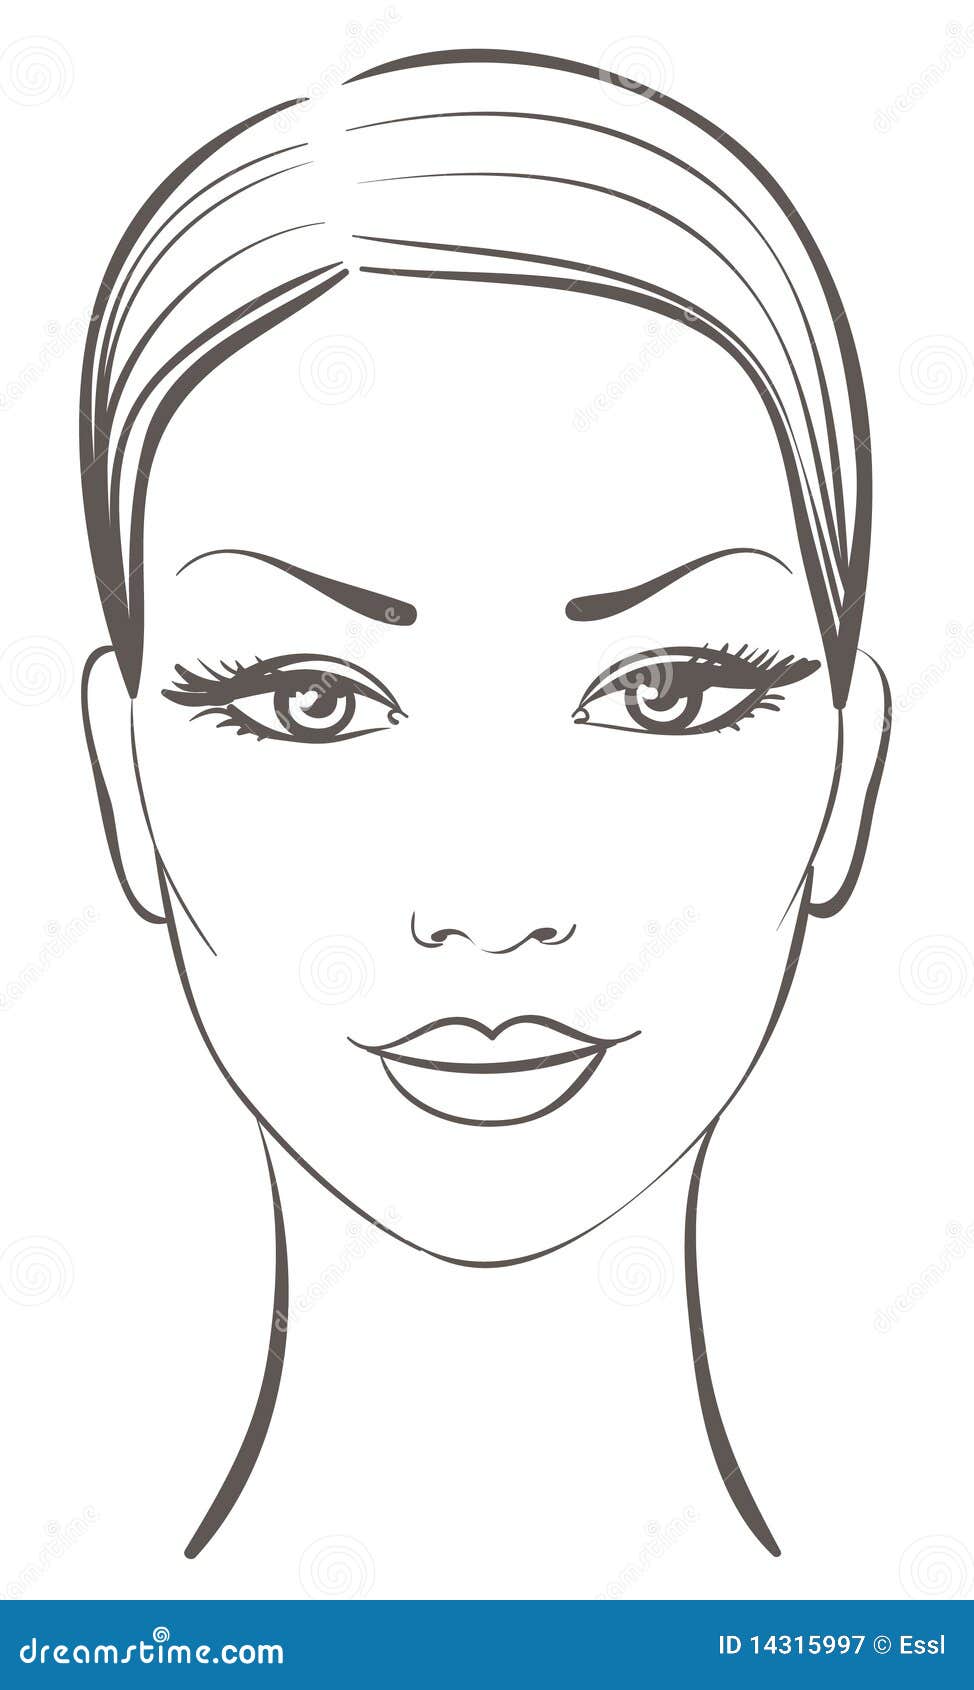 Mooi vrouwengezicht vector illustratie. Illustratie ...